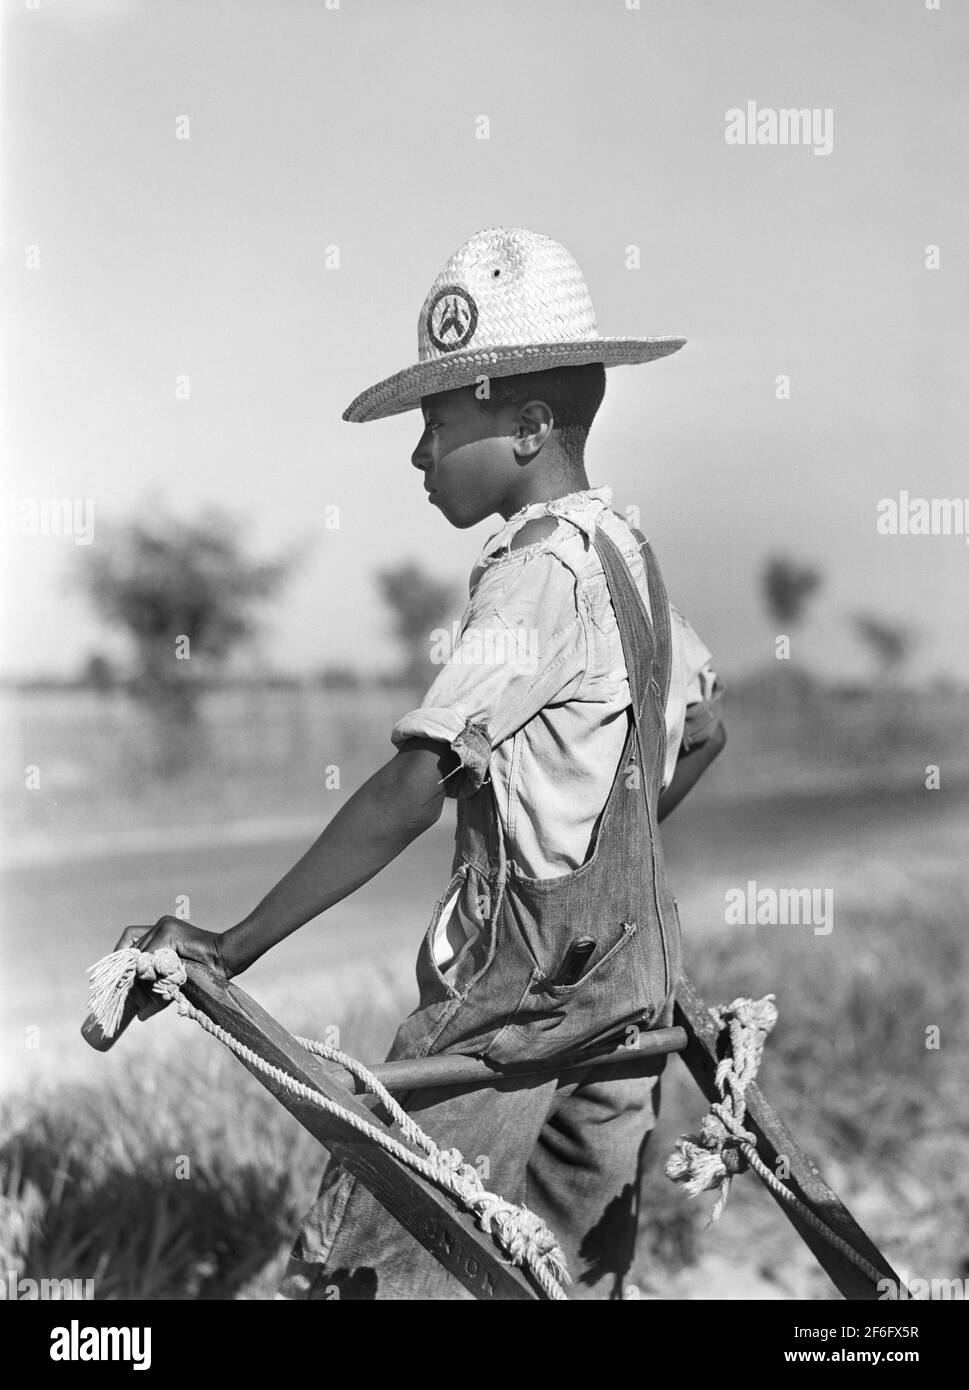 Attesa a mano durante la coltivazione del cotone a metà dell'estate, King and Anderson Plantation vicino a Clarksdale, Mississippi, USA, Marion Post Wolcott, U.S. Farm Security Administration, agosto 1940 Foto Stock